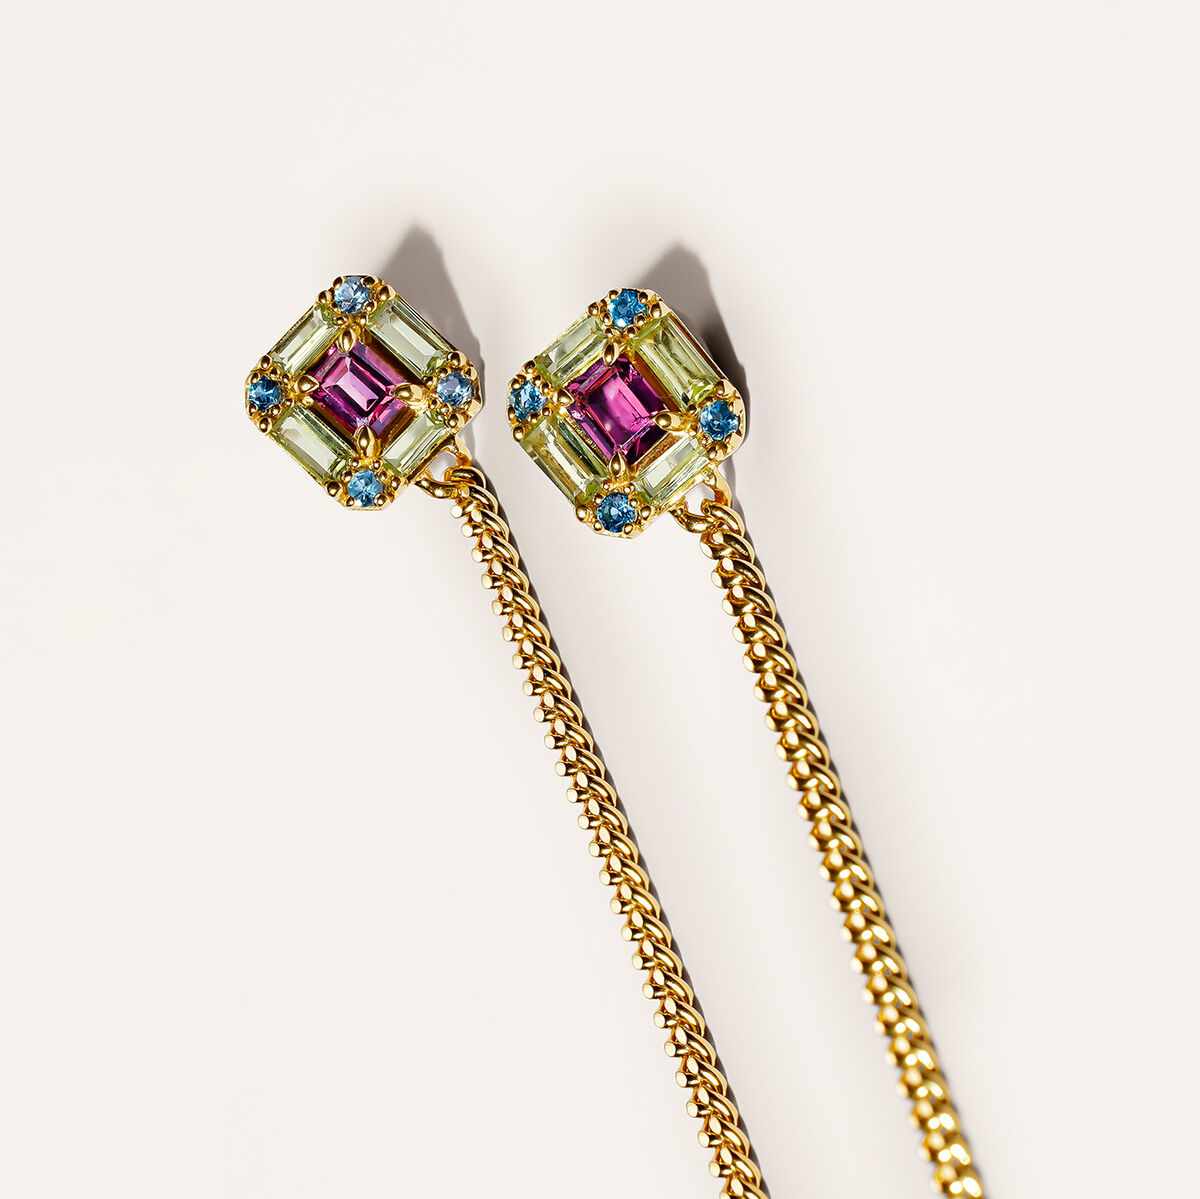 Boucles d’oreilles pendantes à chaîne en argent plaqué en or jaune 18 K avec des pierres multicolores, J04925-02-RO-PE-LB, mainproduct